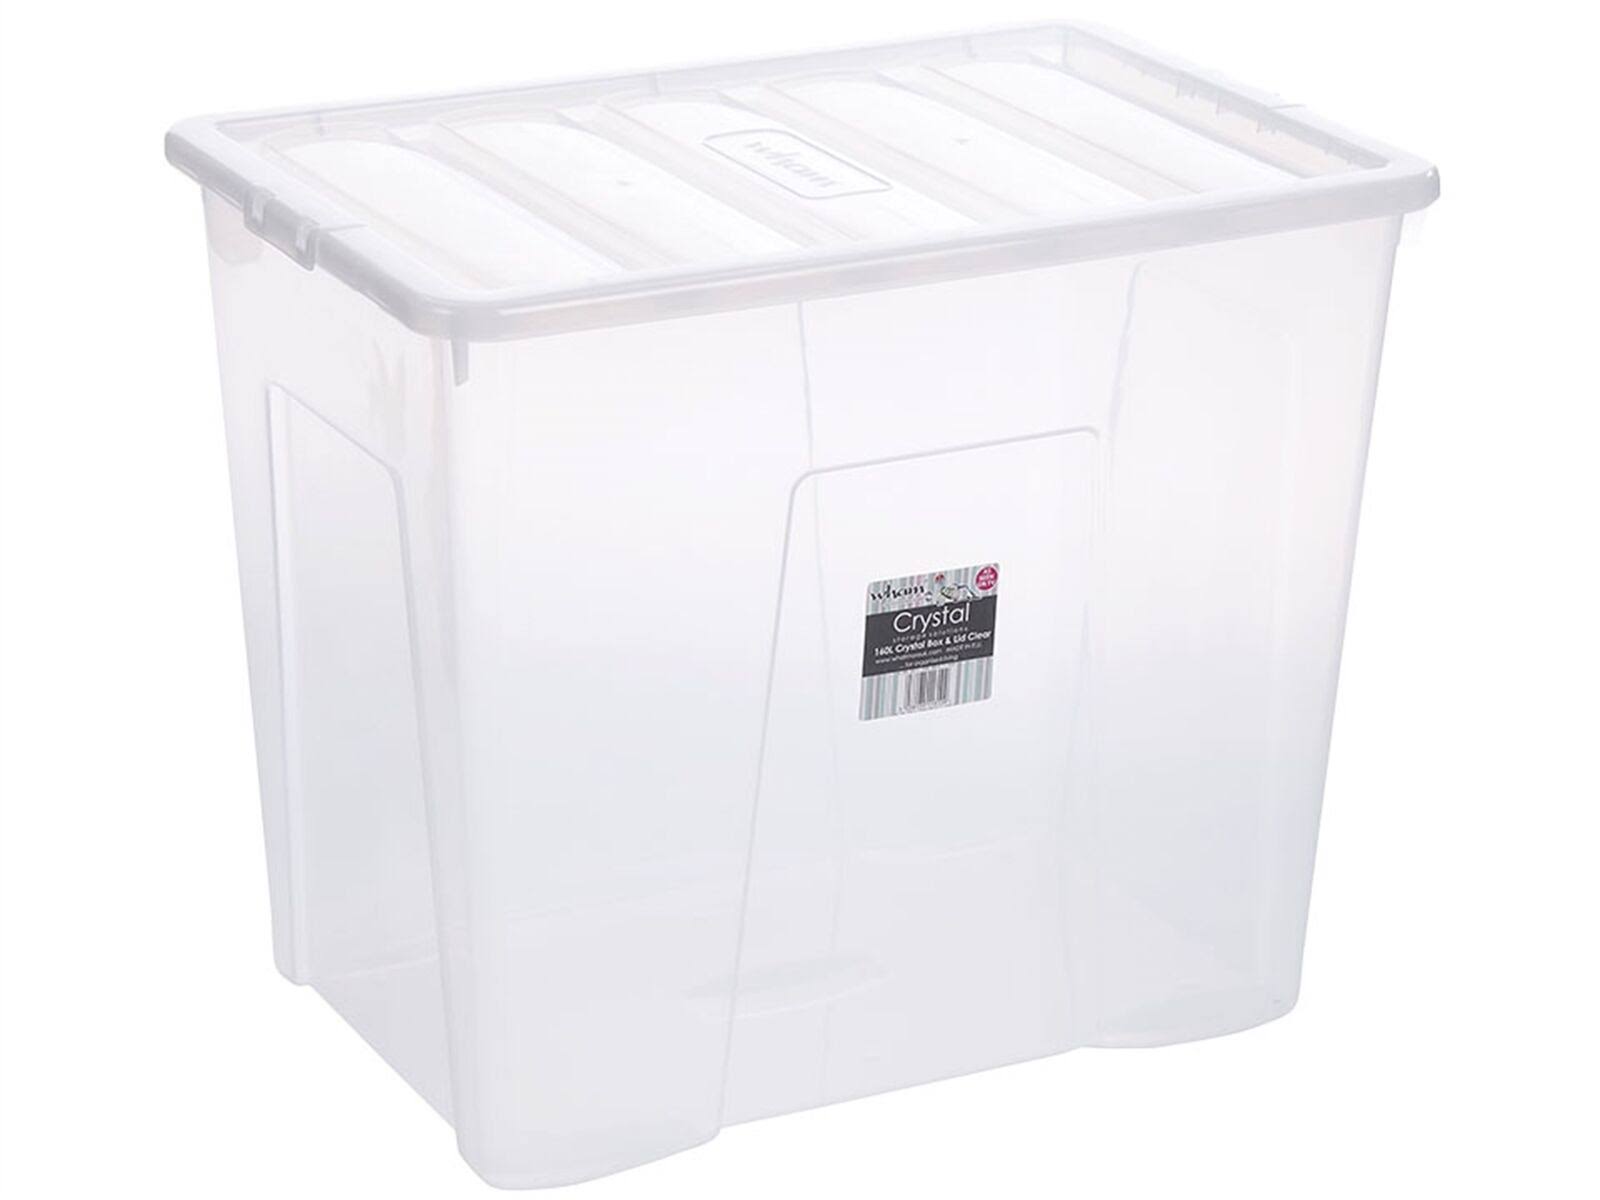 Crystal Storage Box & Lid, Clear - 160L - Wham